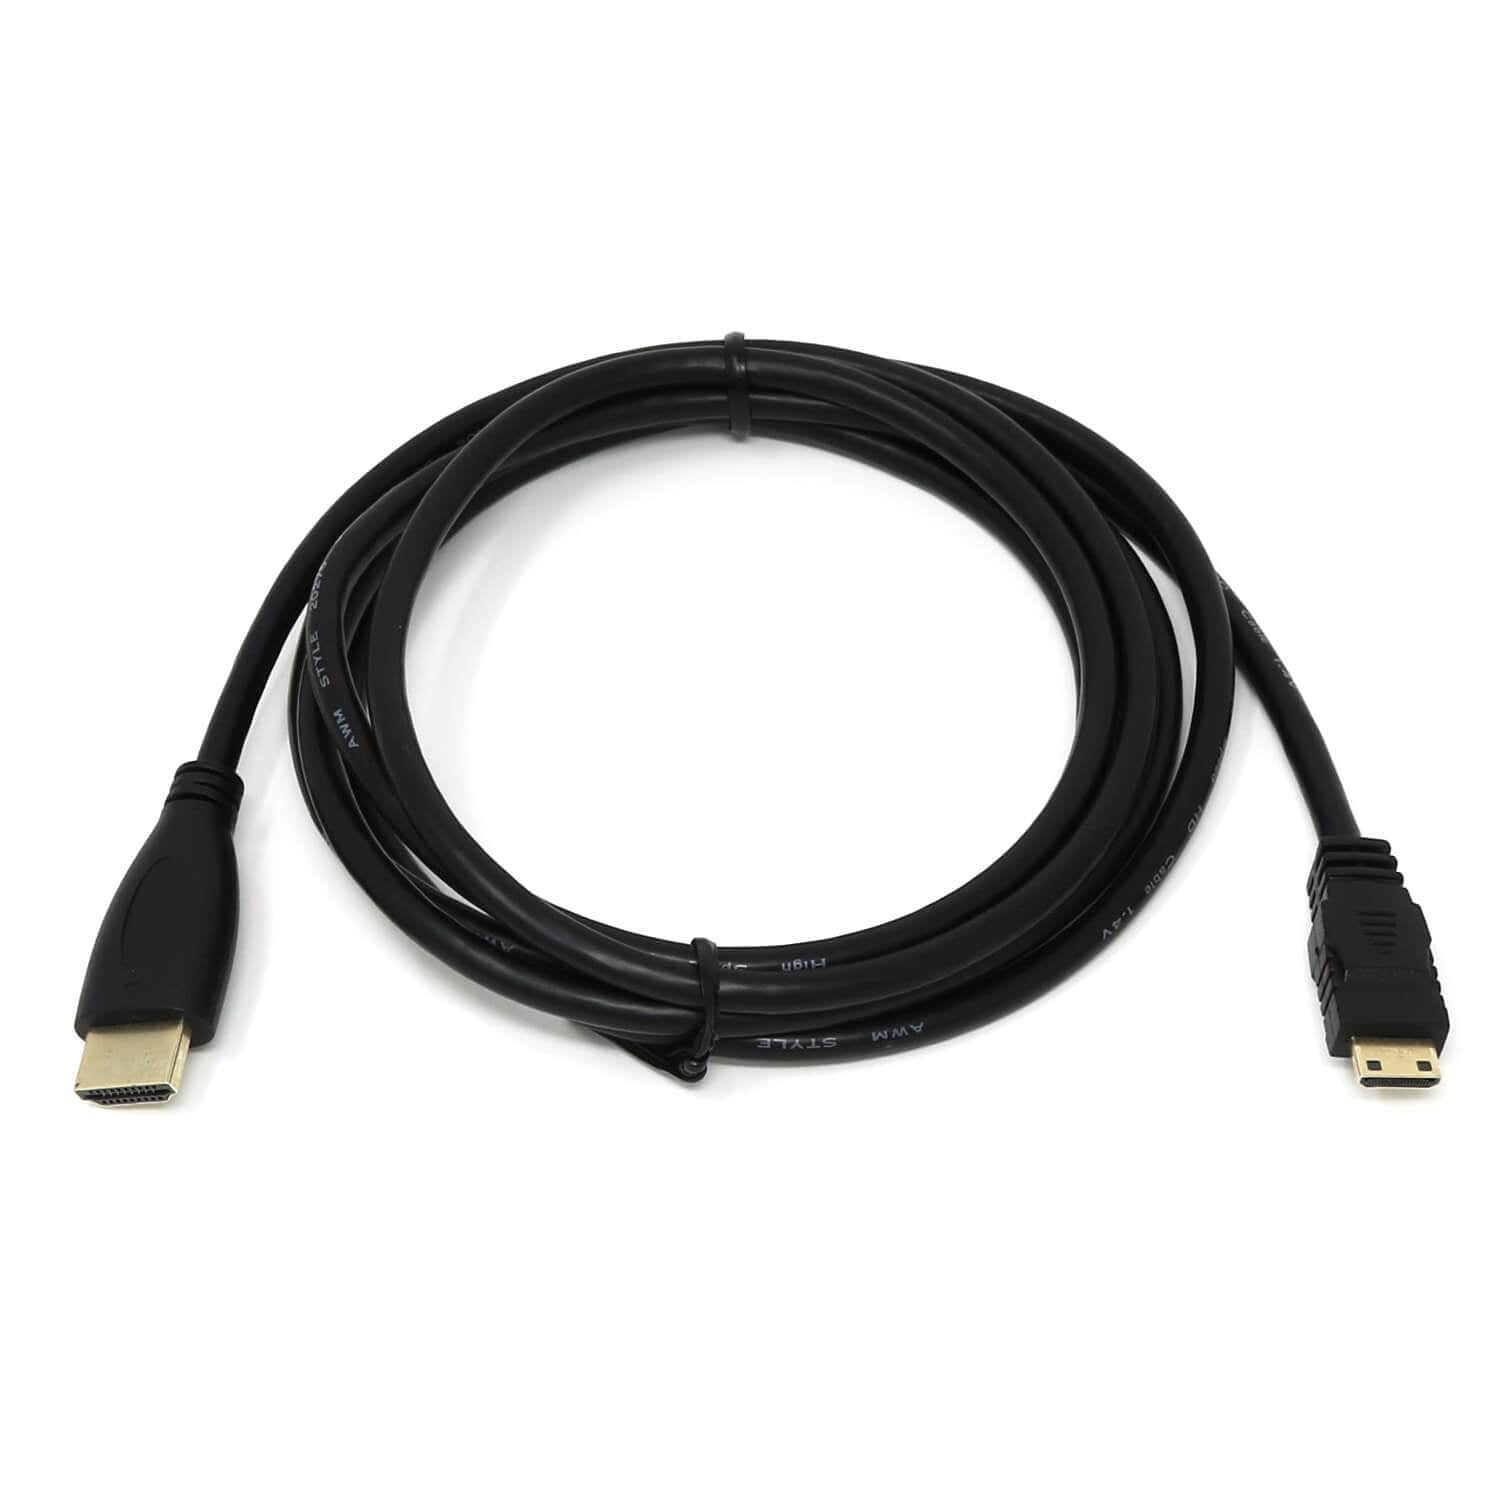 Mini HDMI to HDMI Cable for Raspberry Pi Zero - The Pi Hut